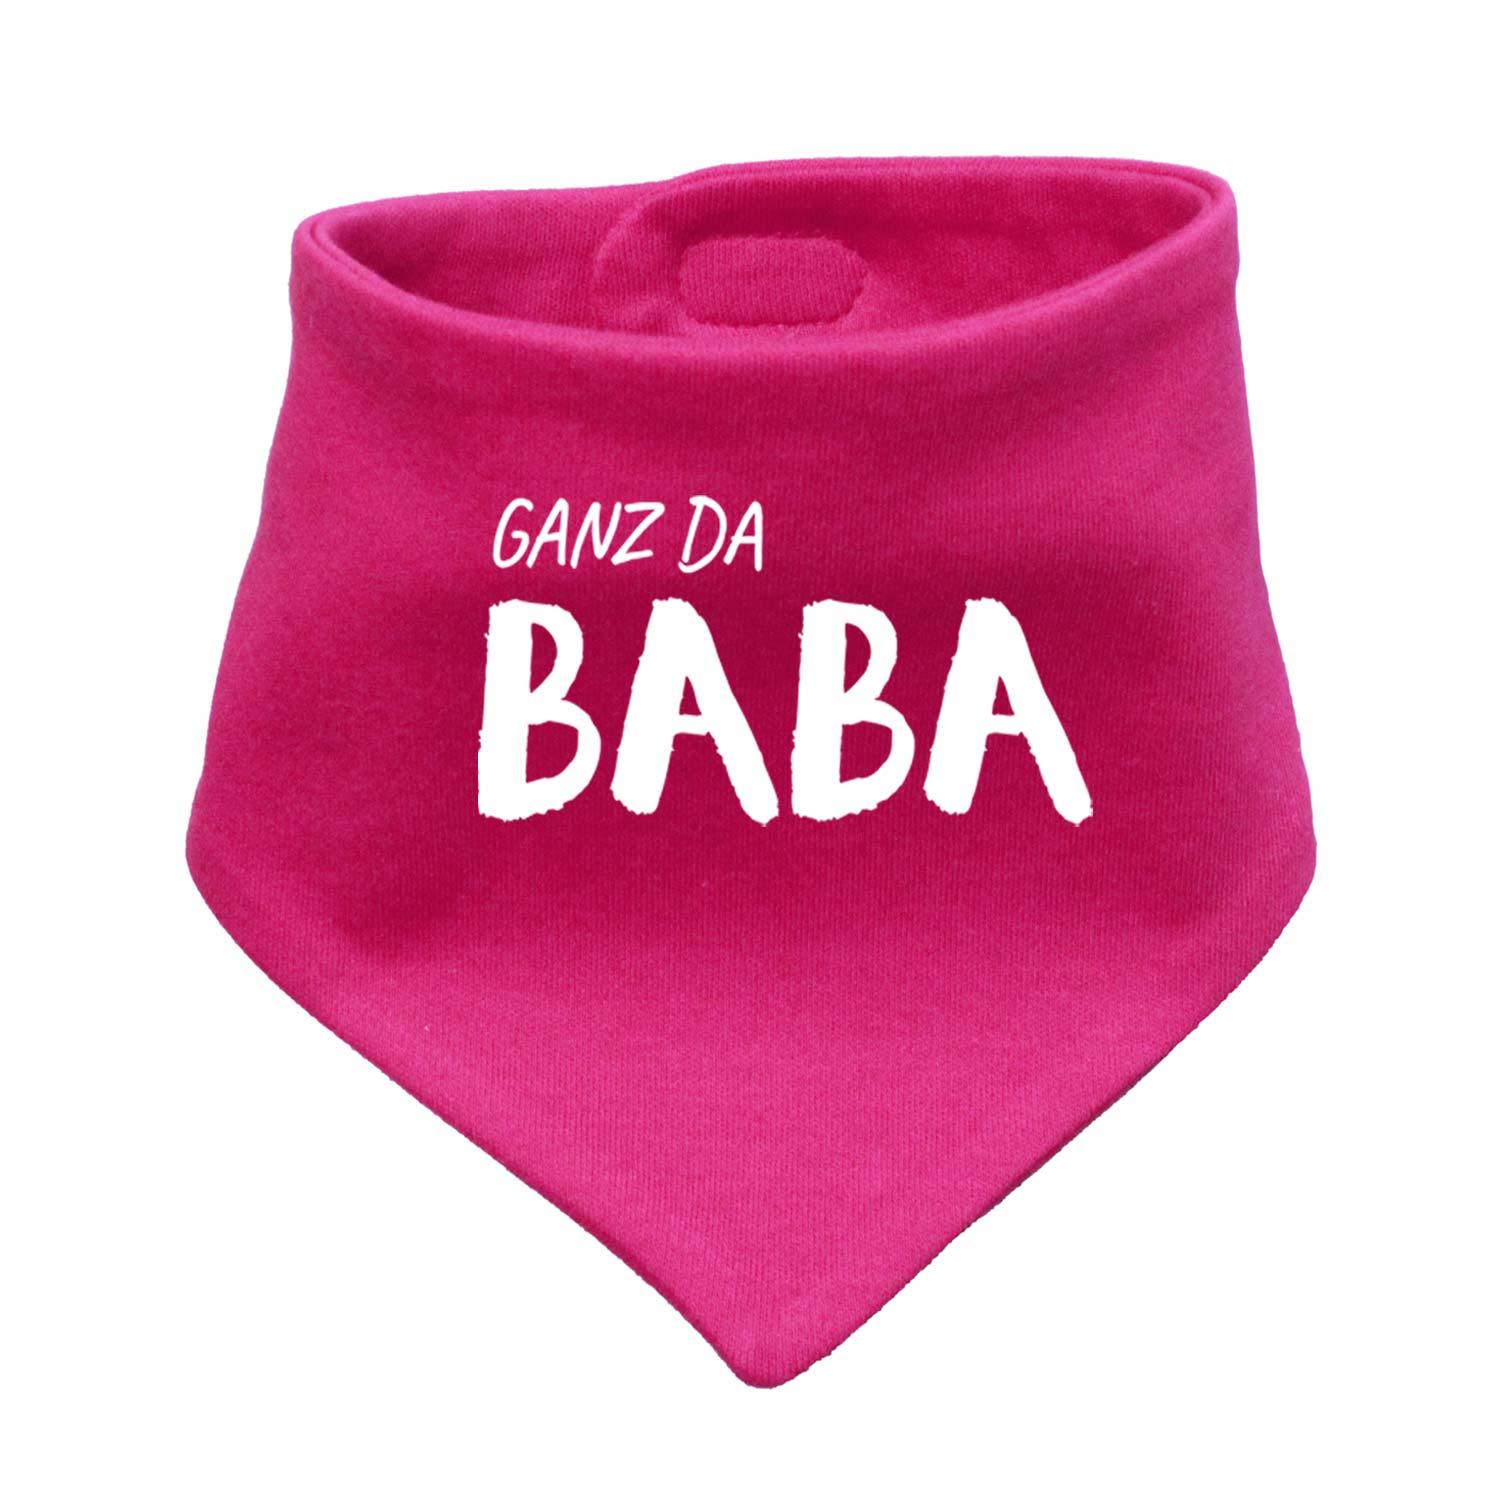 Babyhalstuch "Ganz da Baba!" - bavariashop - mei LebensGfui